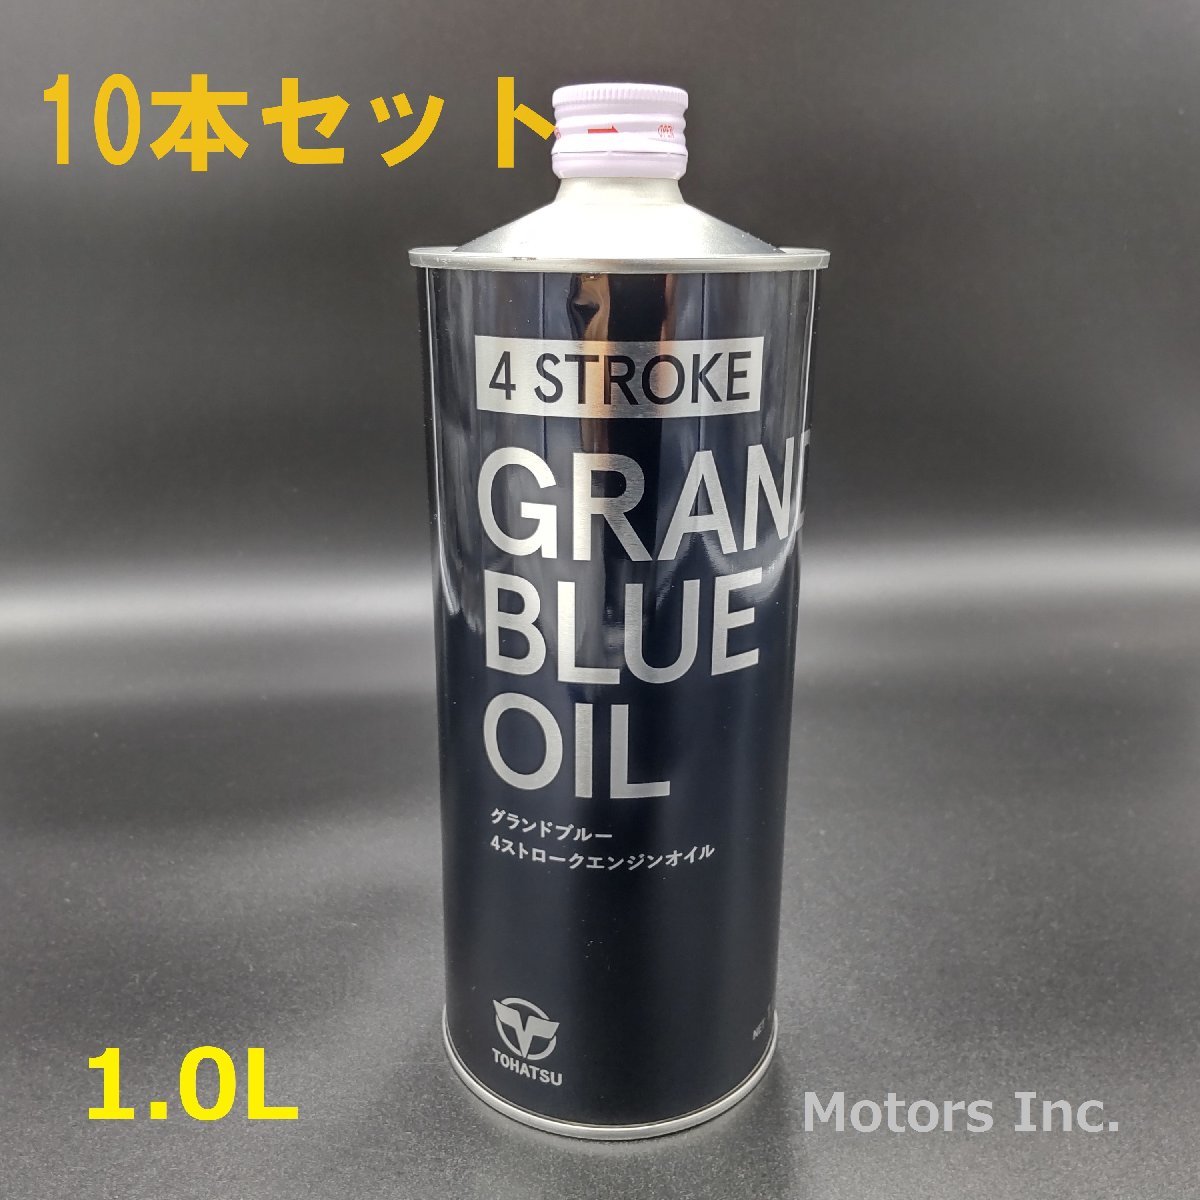 送料無料 トーハツ TOHASU グランドブルー 4ストローク エンジンオイル 10本セット GRAND BLUE OIL 4st 1.0L SG 10W-30 S24-49825-725